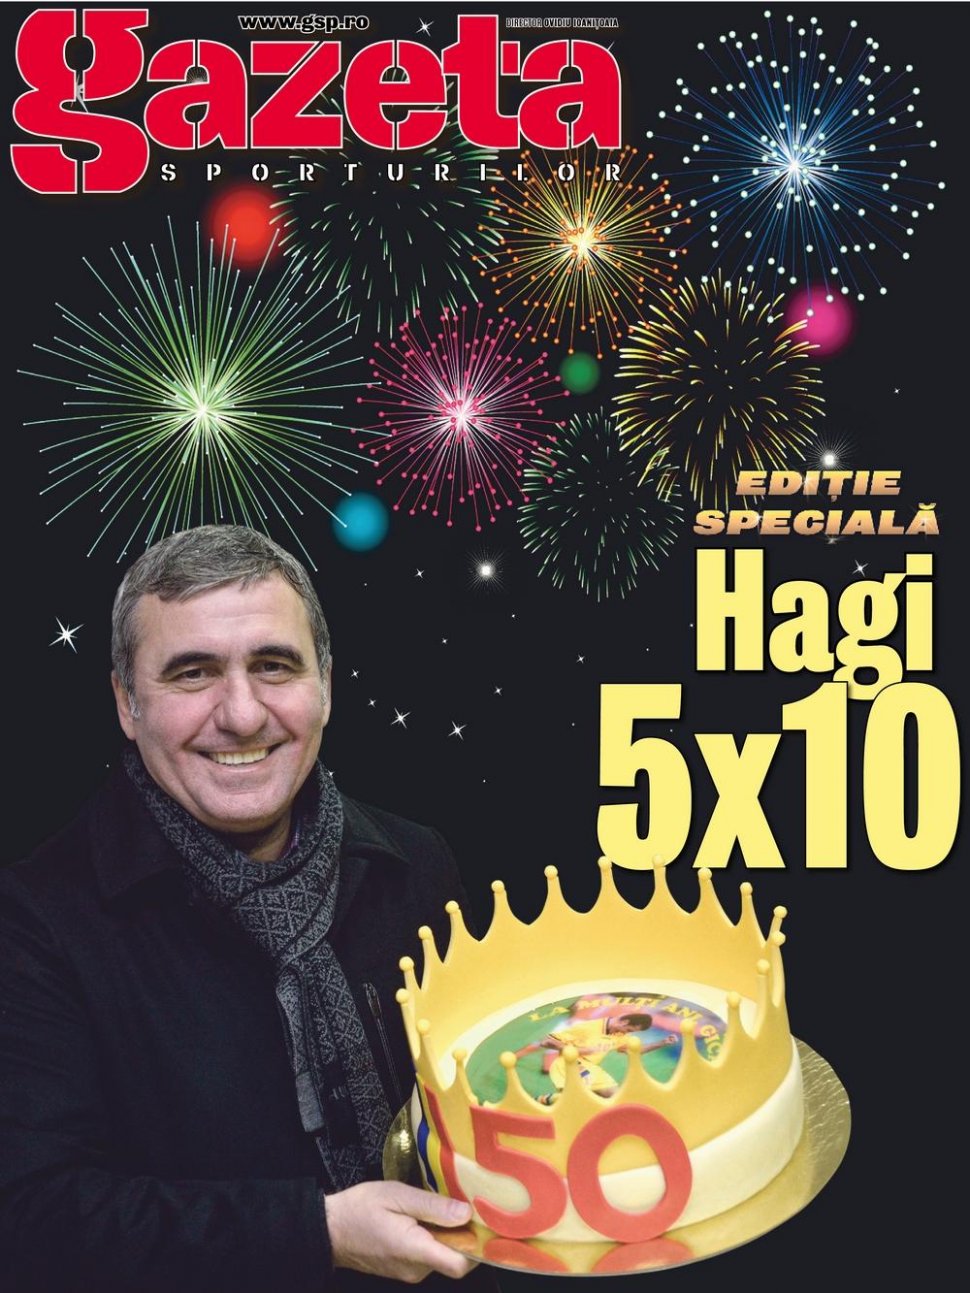 Gazeta Sporturilor îi dedică o ediţie specială a ziarului lui Gheorghe Hagi